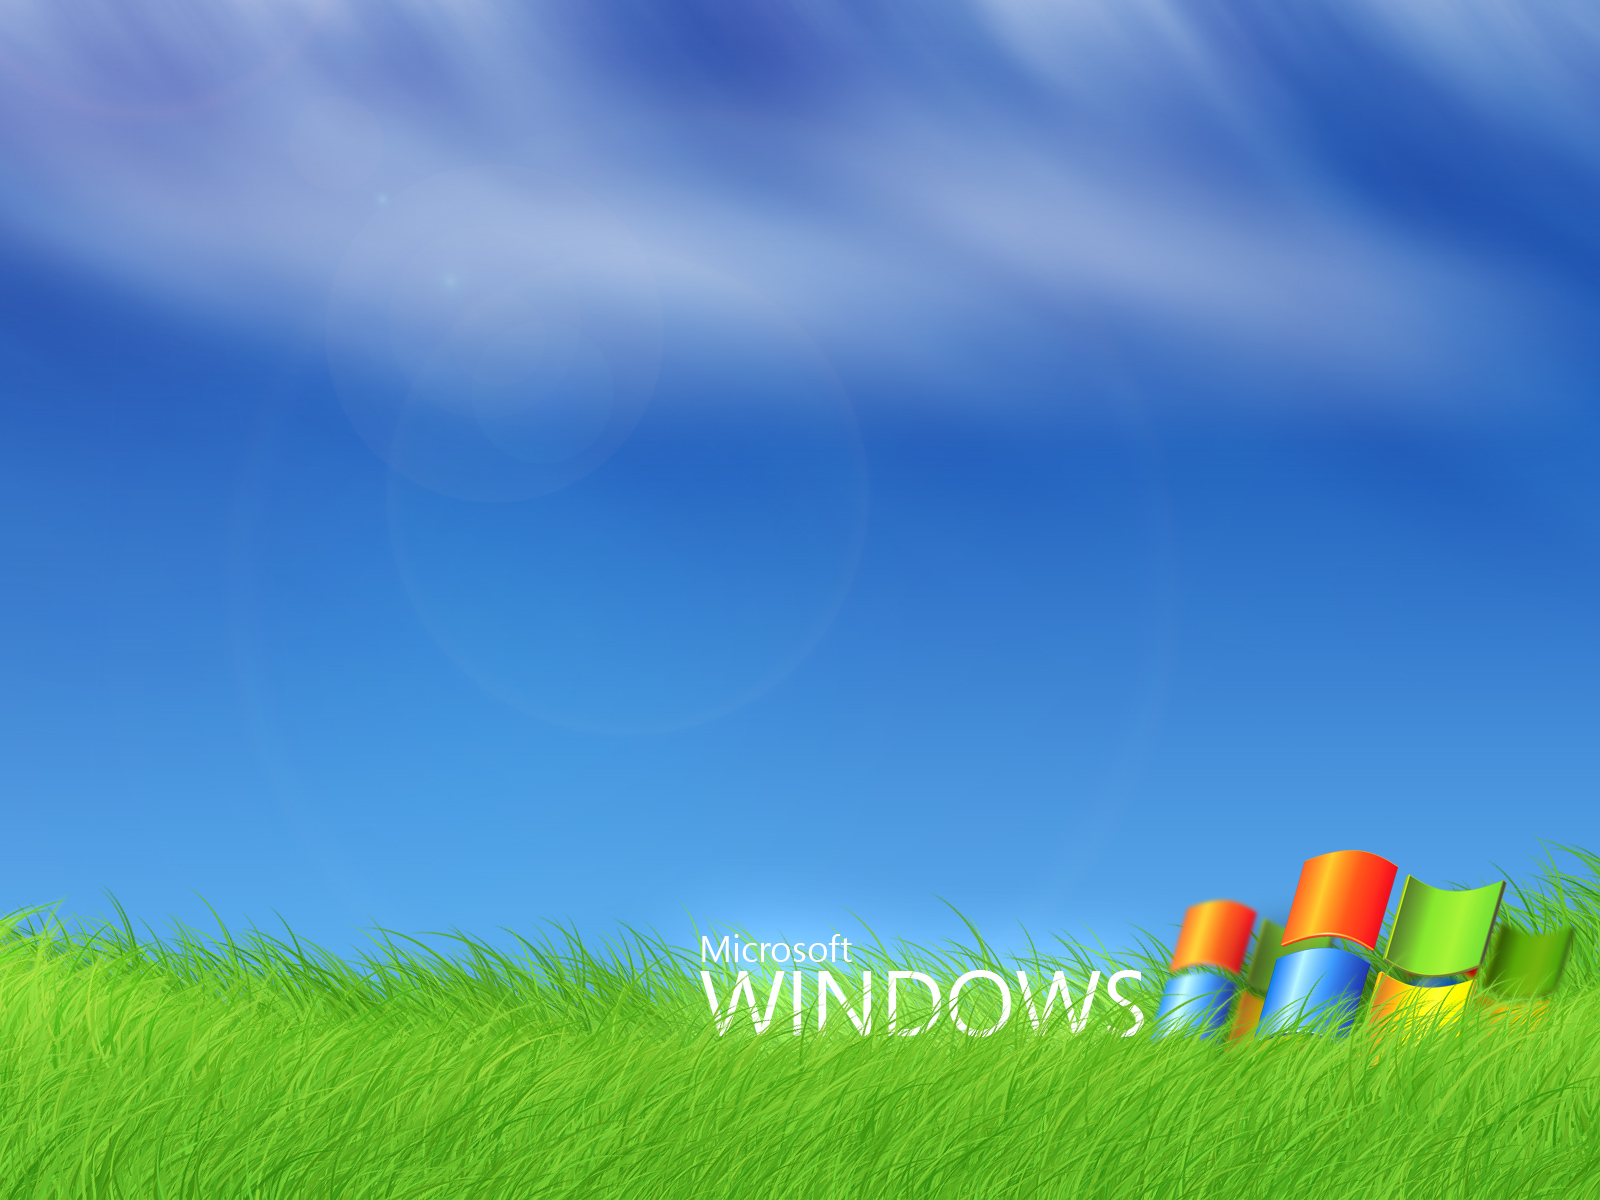 windows wallpaper kostenloser download,natürliche landschaft,himmel,wiese,gras,wiese